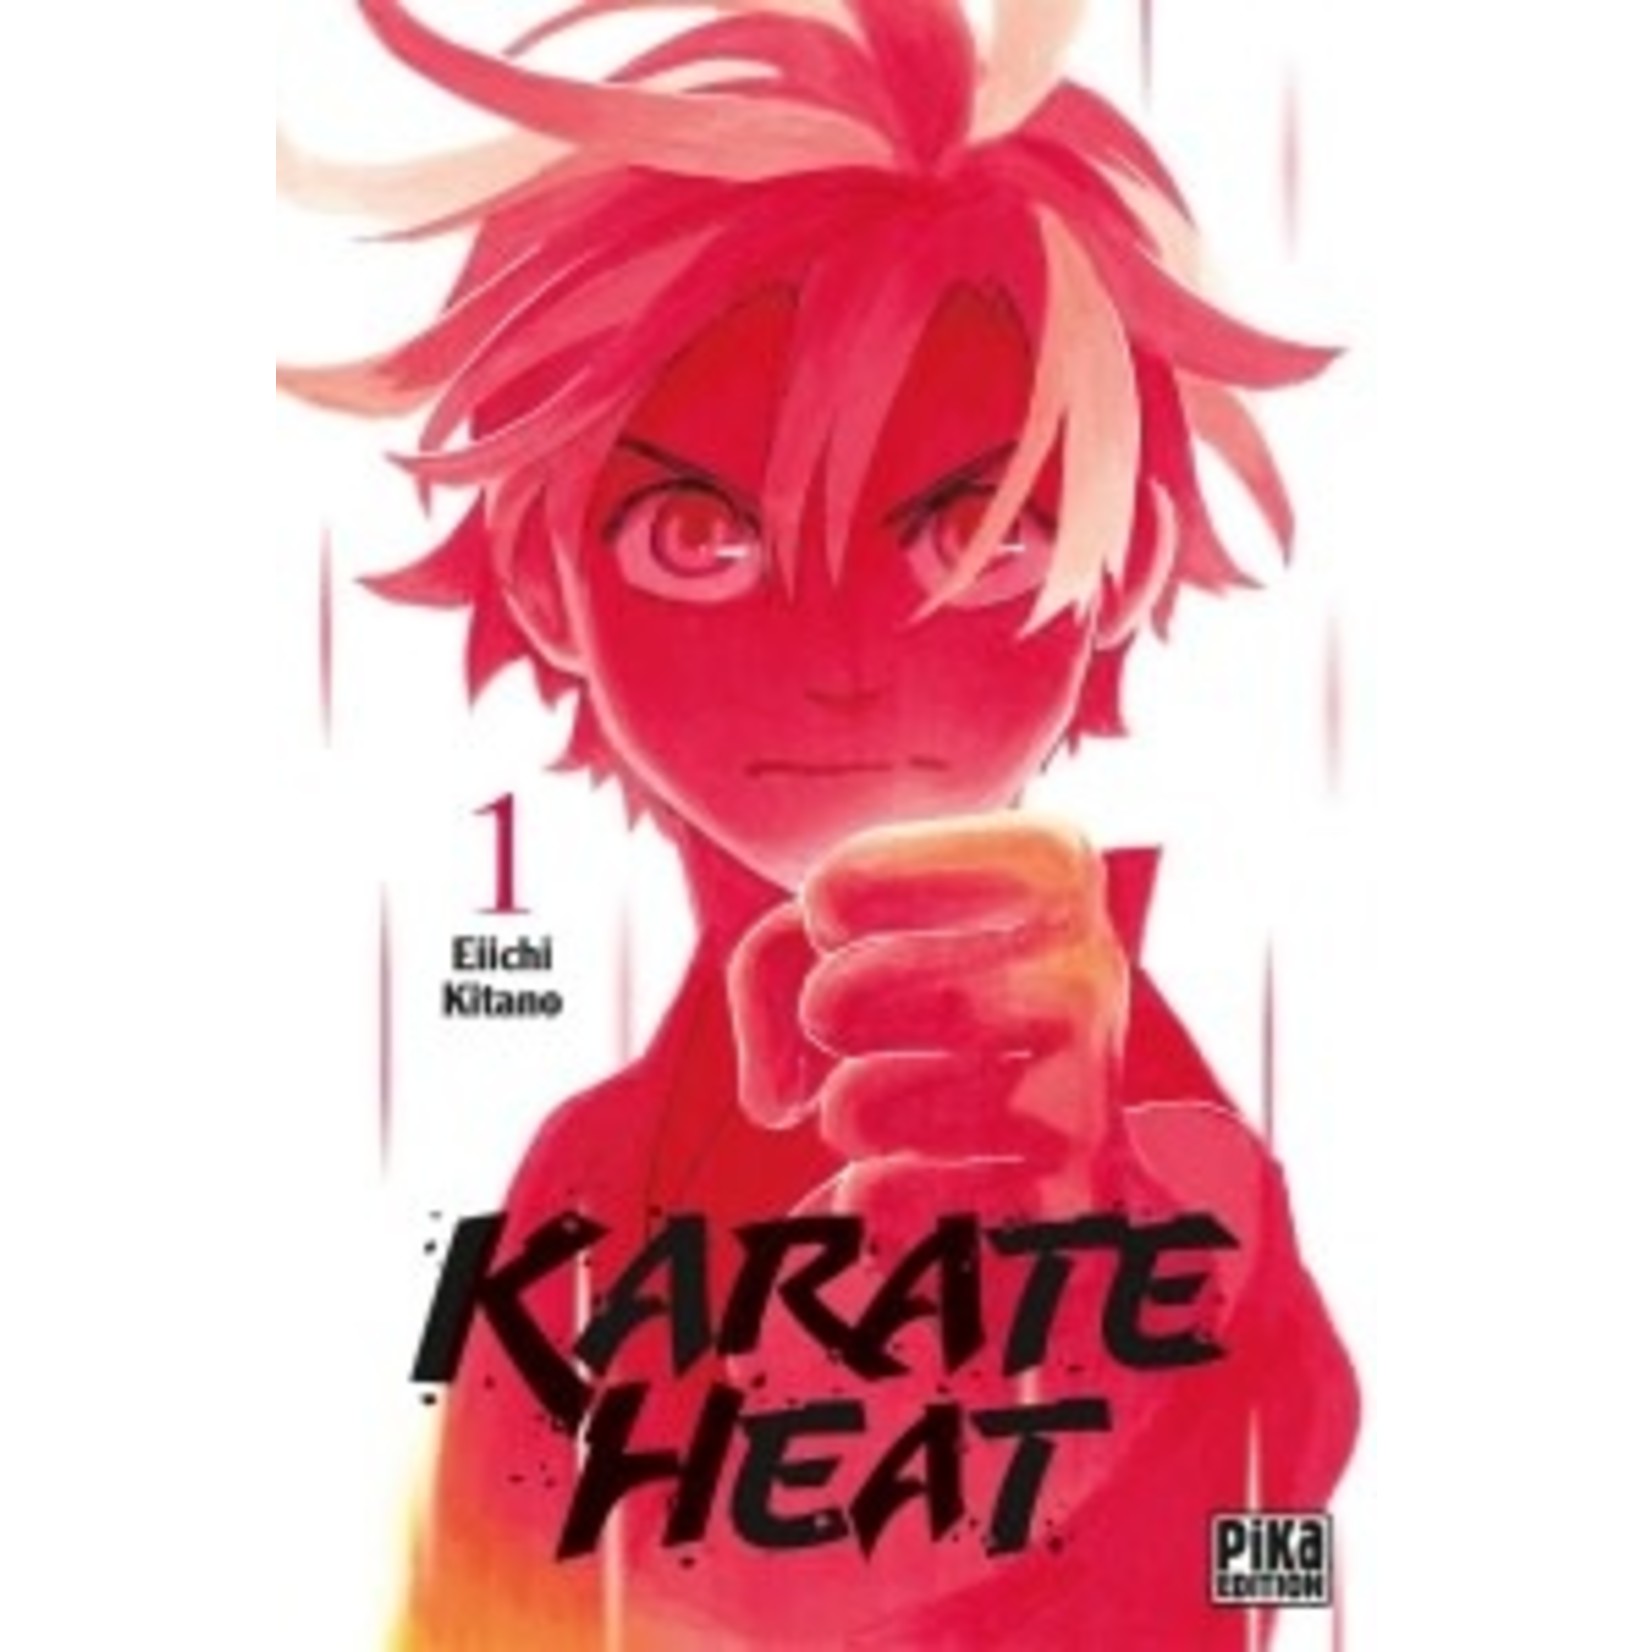 0-Pika Karate heat